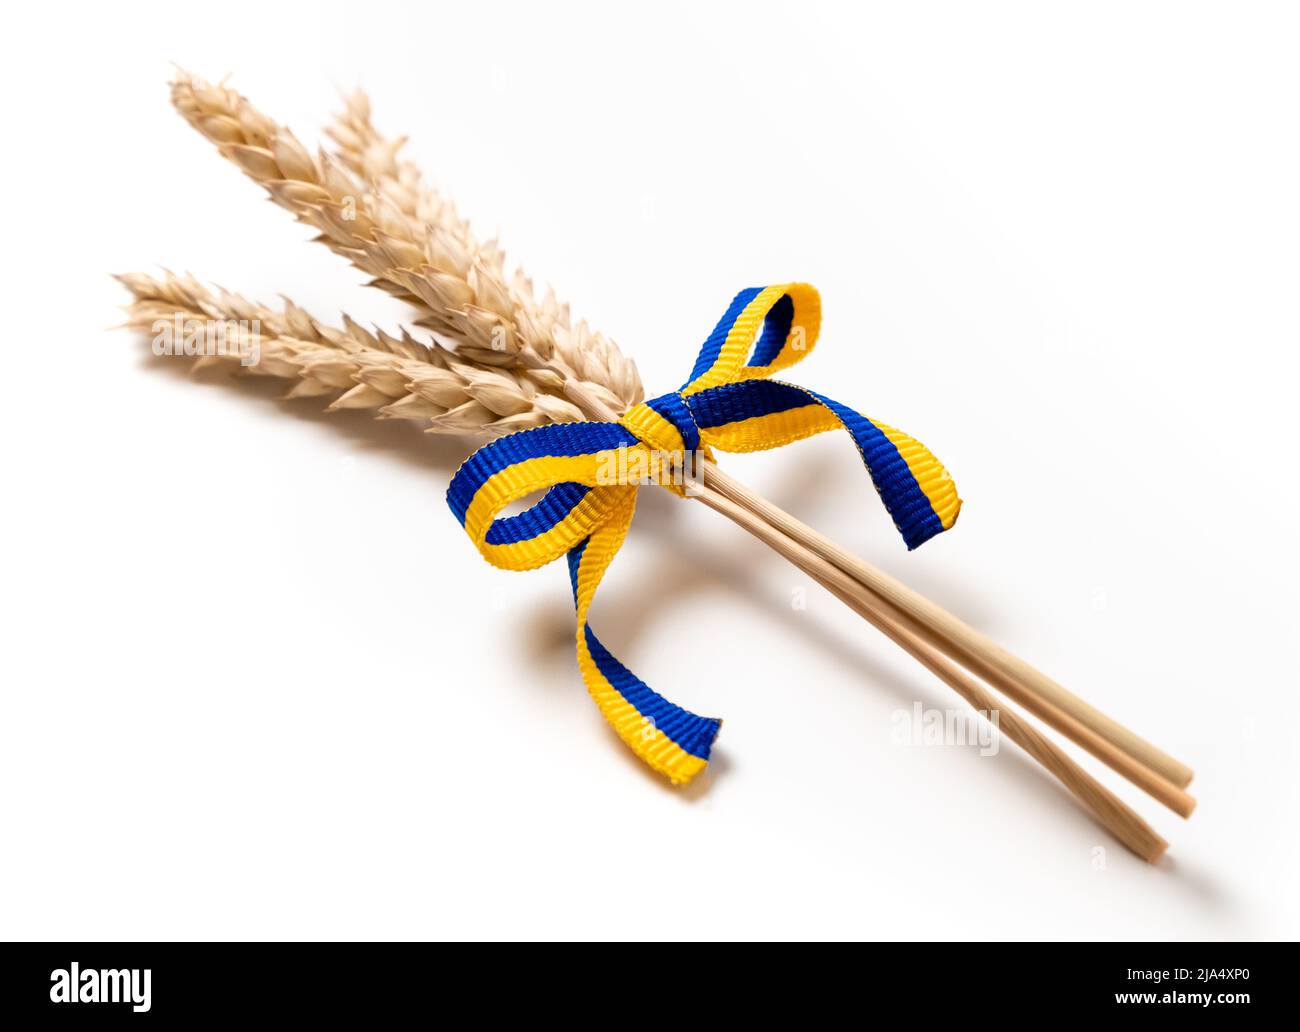 Fascio di punte di grano con nastro giallo e blu nei colori della bandiera Ucraina isolata su bianco. Concetto di crisi alimentare e alimentare globale Foto Stock